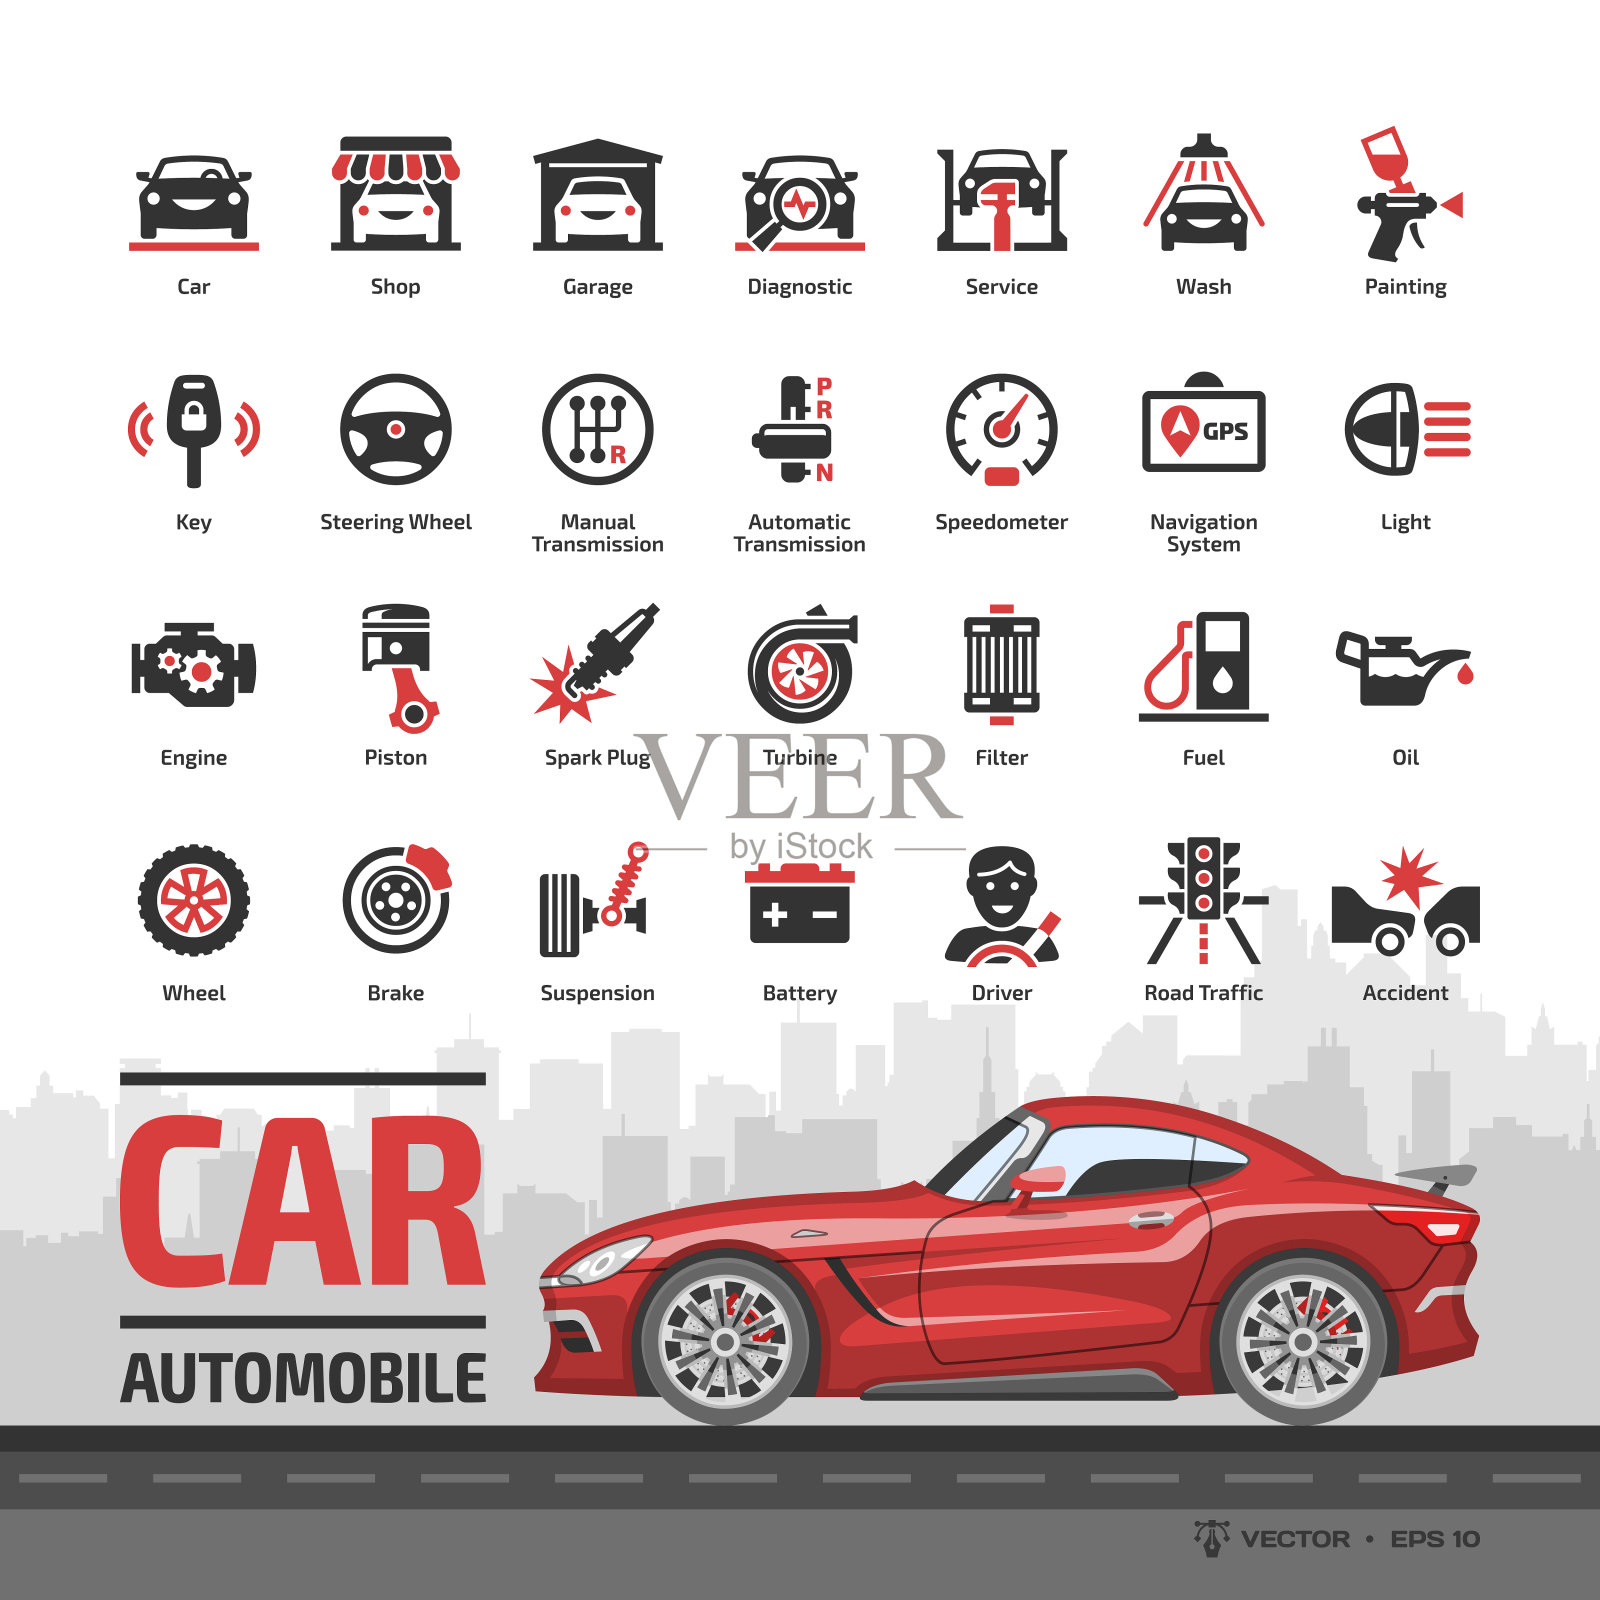 汽车图标设置与红色跑车模型和基本的汽车符号:汽车，汽车服务，洗车和商店，汽车修理，车轮和轮胎，油和燃料，发动机，电池，刹车和更多的符号。插画图片素材